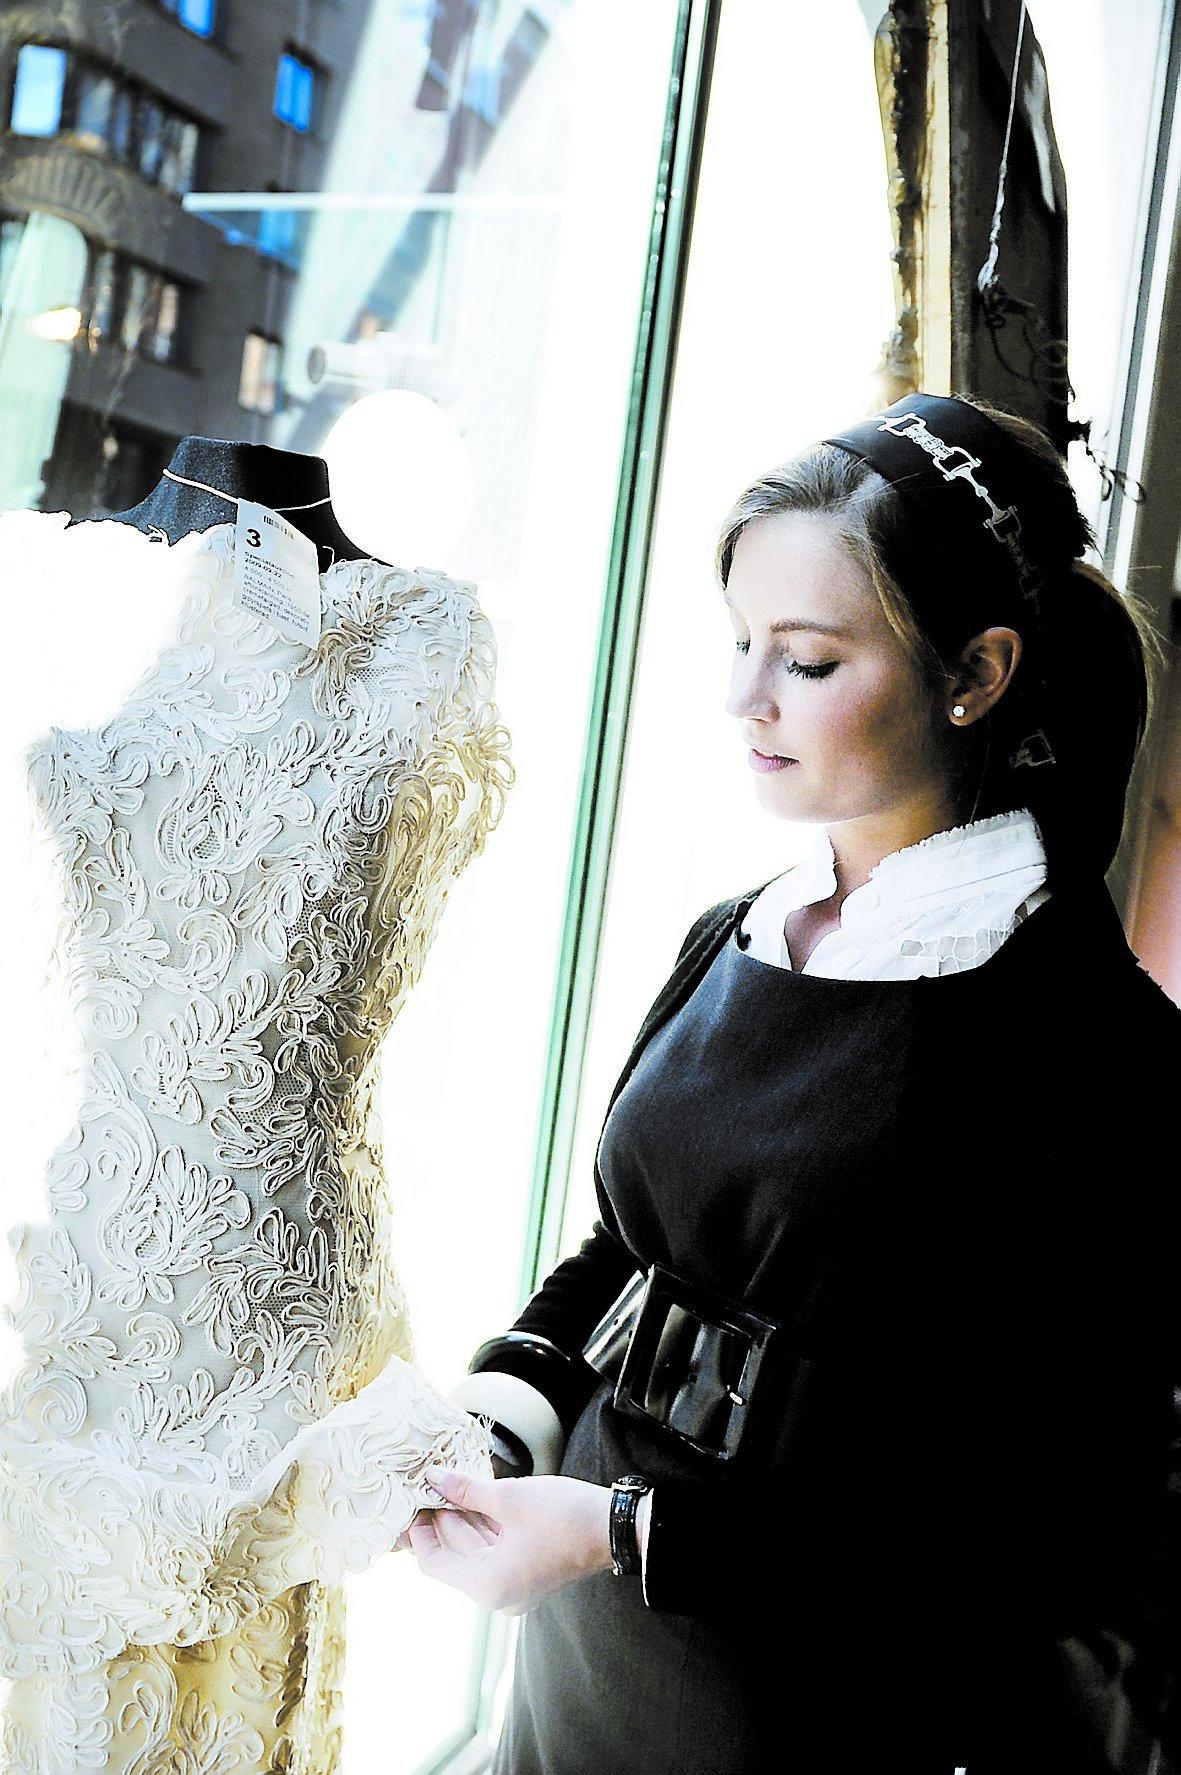 BALMAIN-BLÅSA Beata af Donner, utställningsansvarig, visar sin favoritklänning: En gräddvit 1950-talsblåsa från Balmain med utropspris på 4 000–5 000 kronor. ”Den är värd betydligt mer”, säger hon.